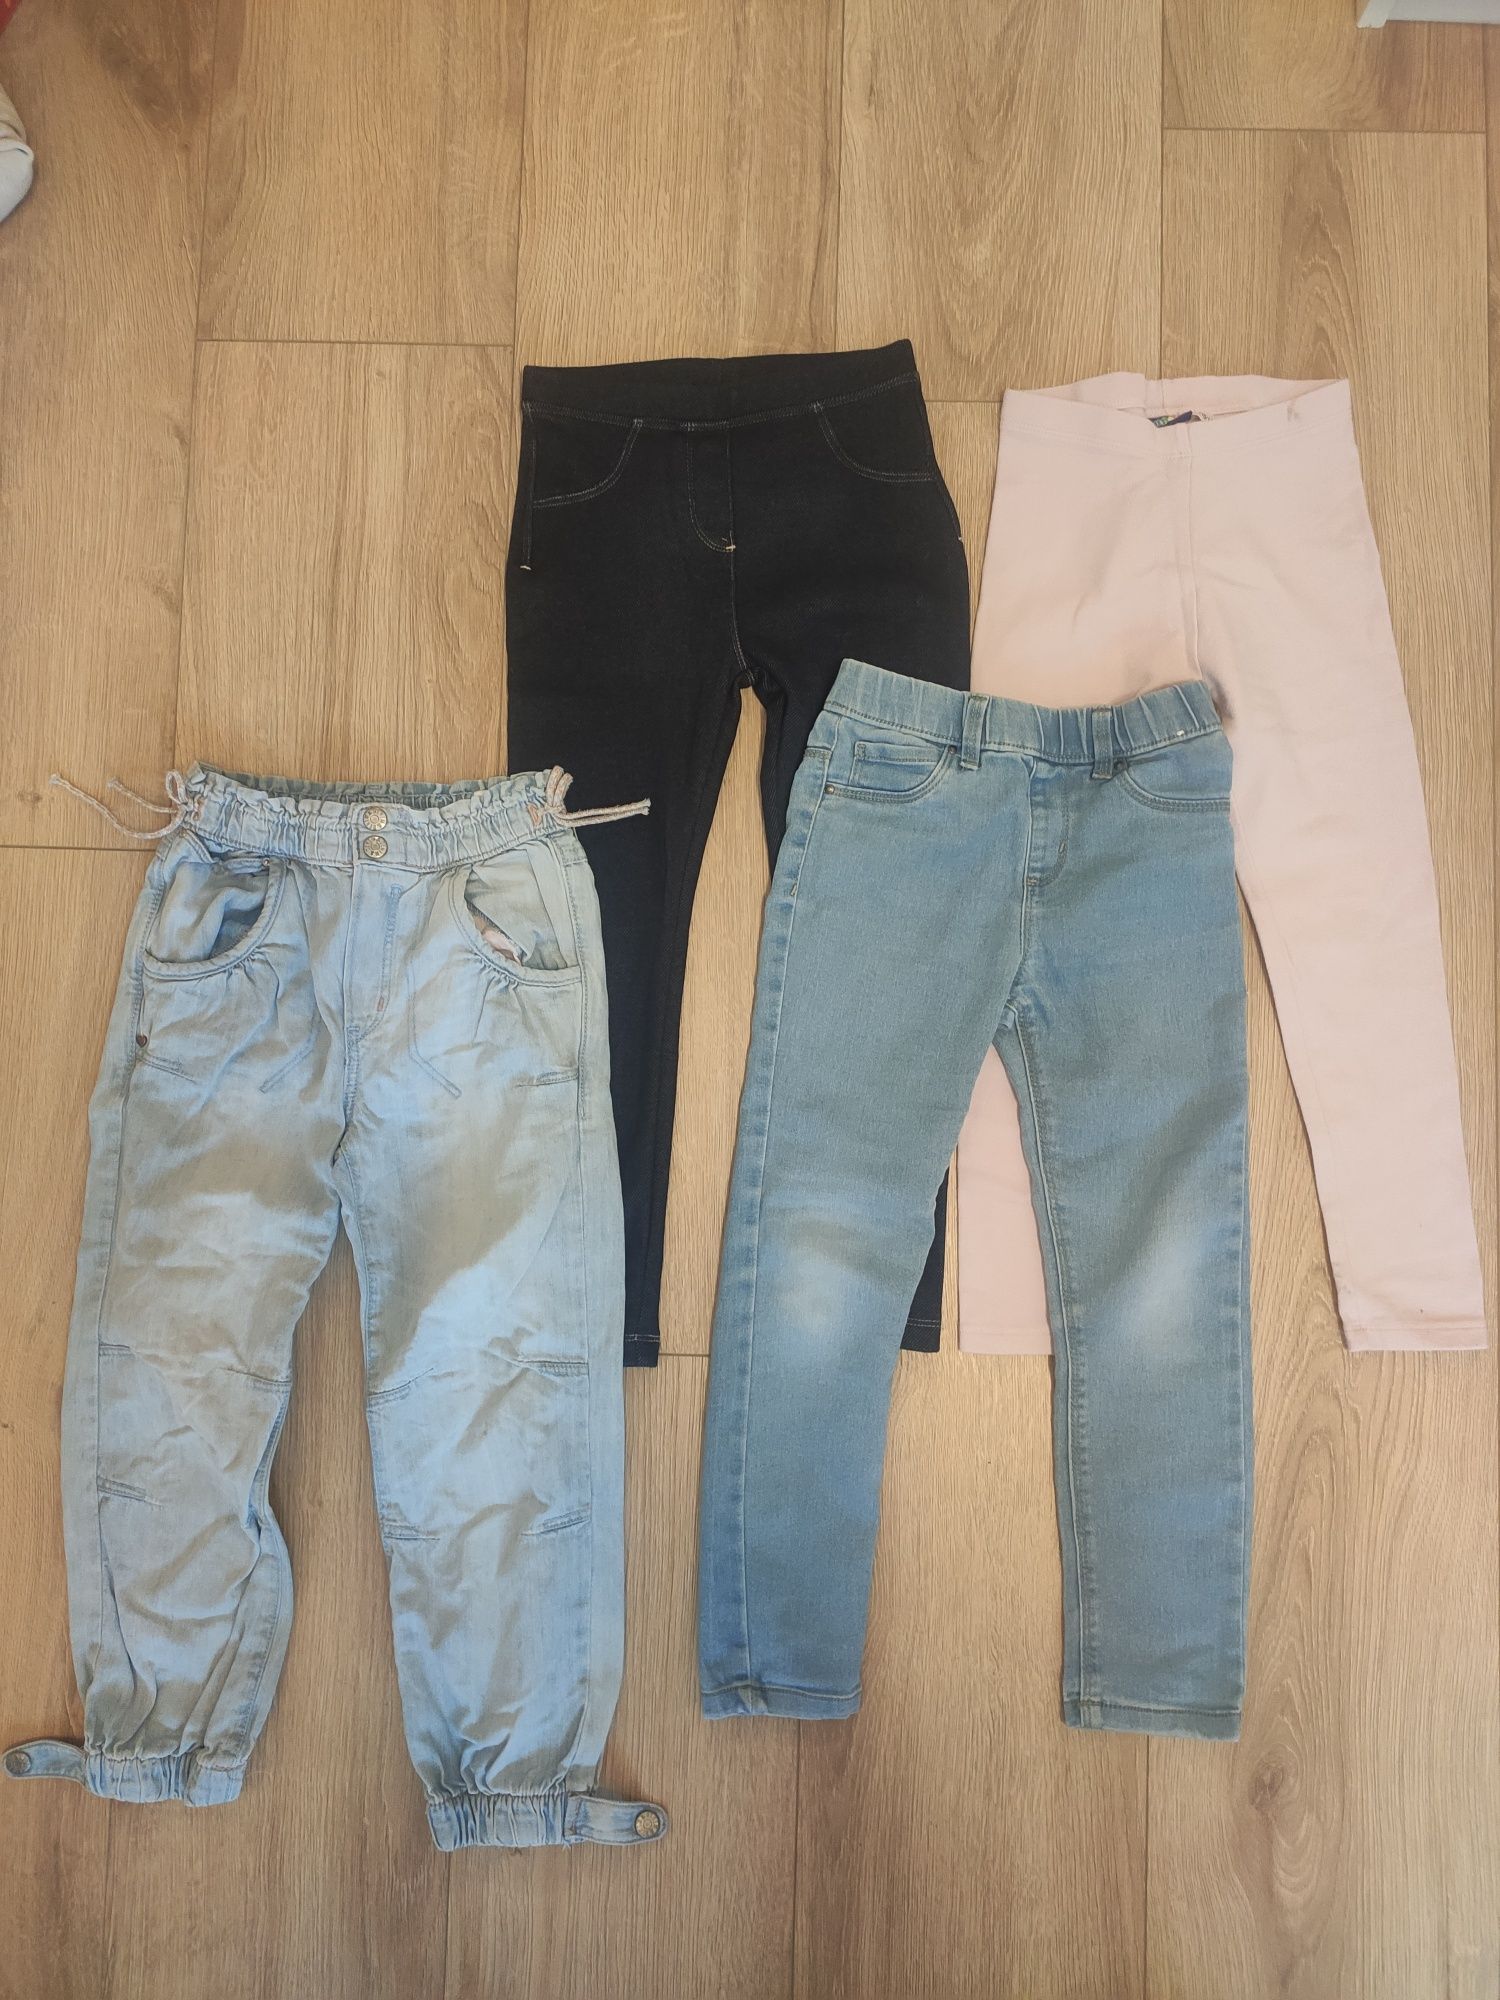 Spodnie dziecięce 110/116 i jeansowe 116/122 nowe i używane